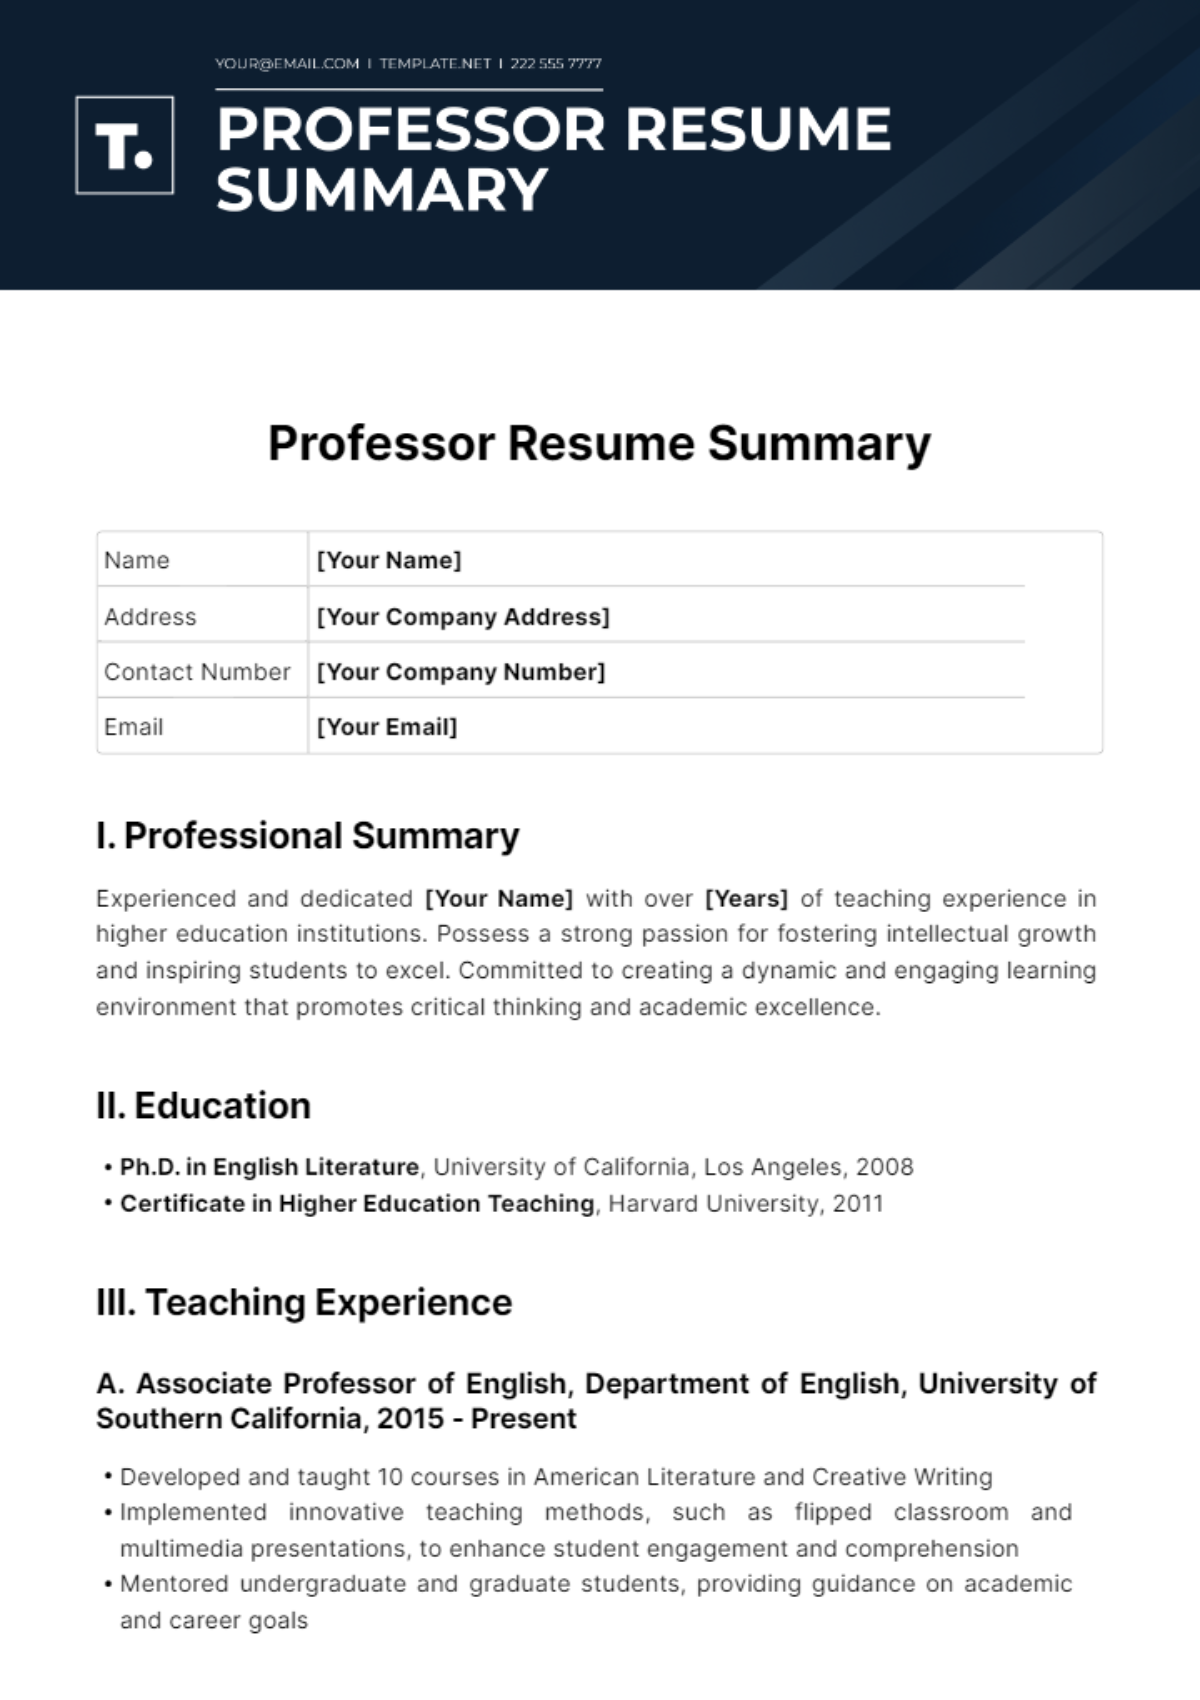 Professor Resume Summary Template